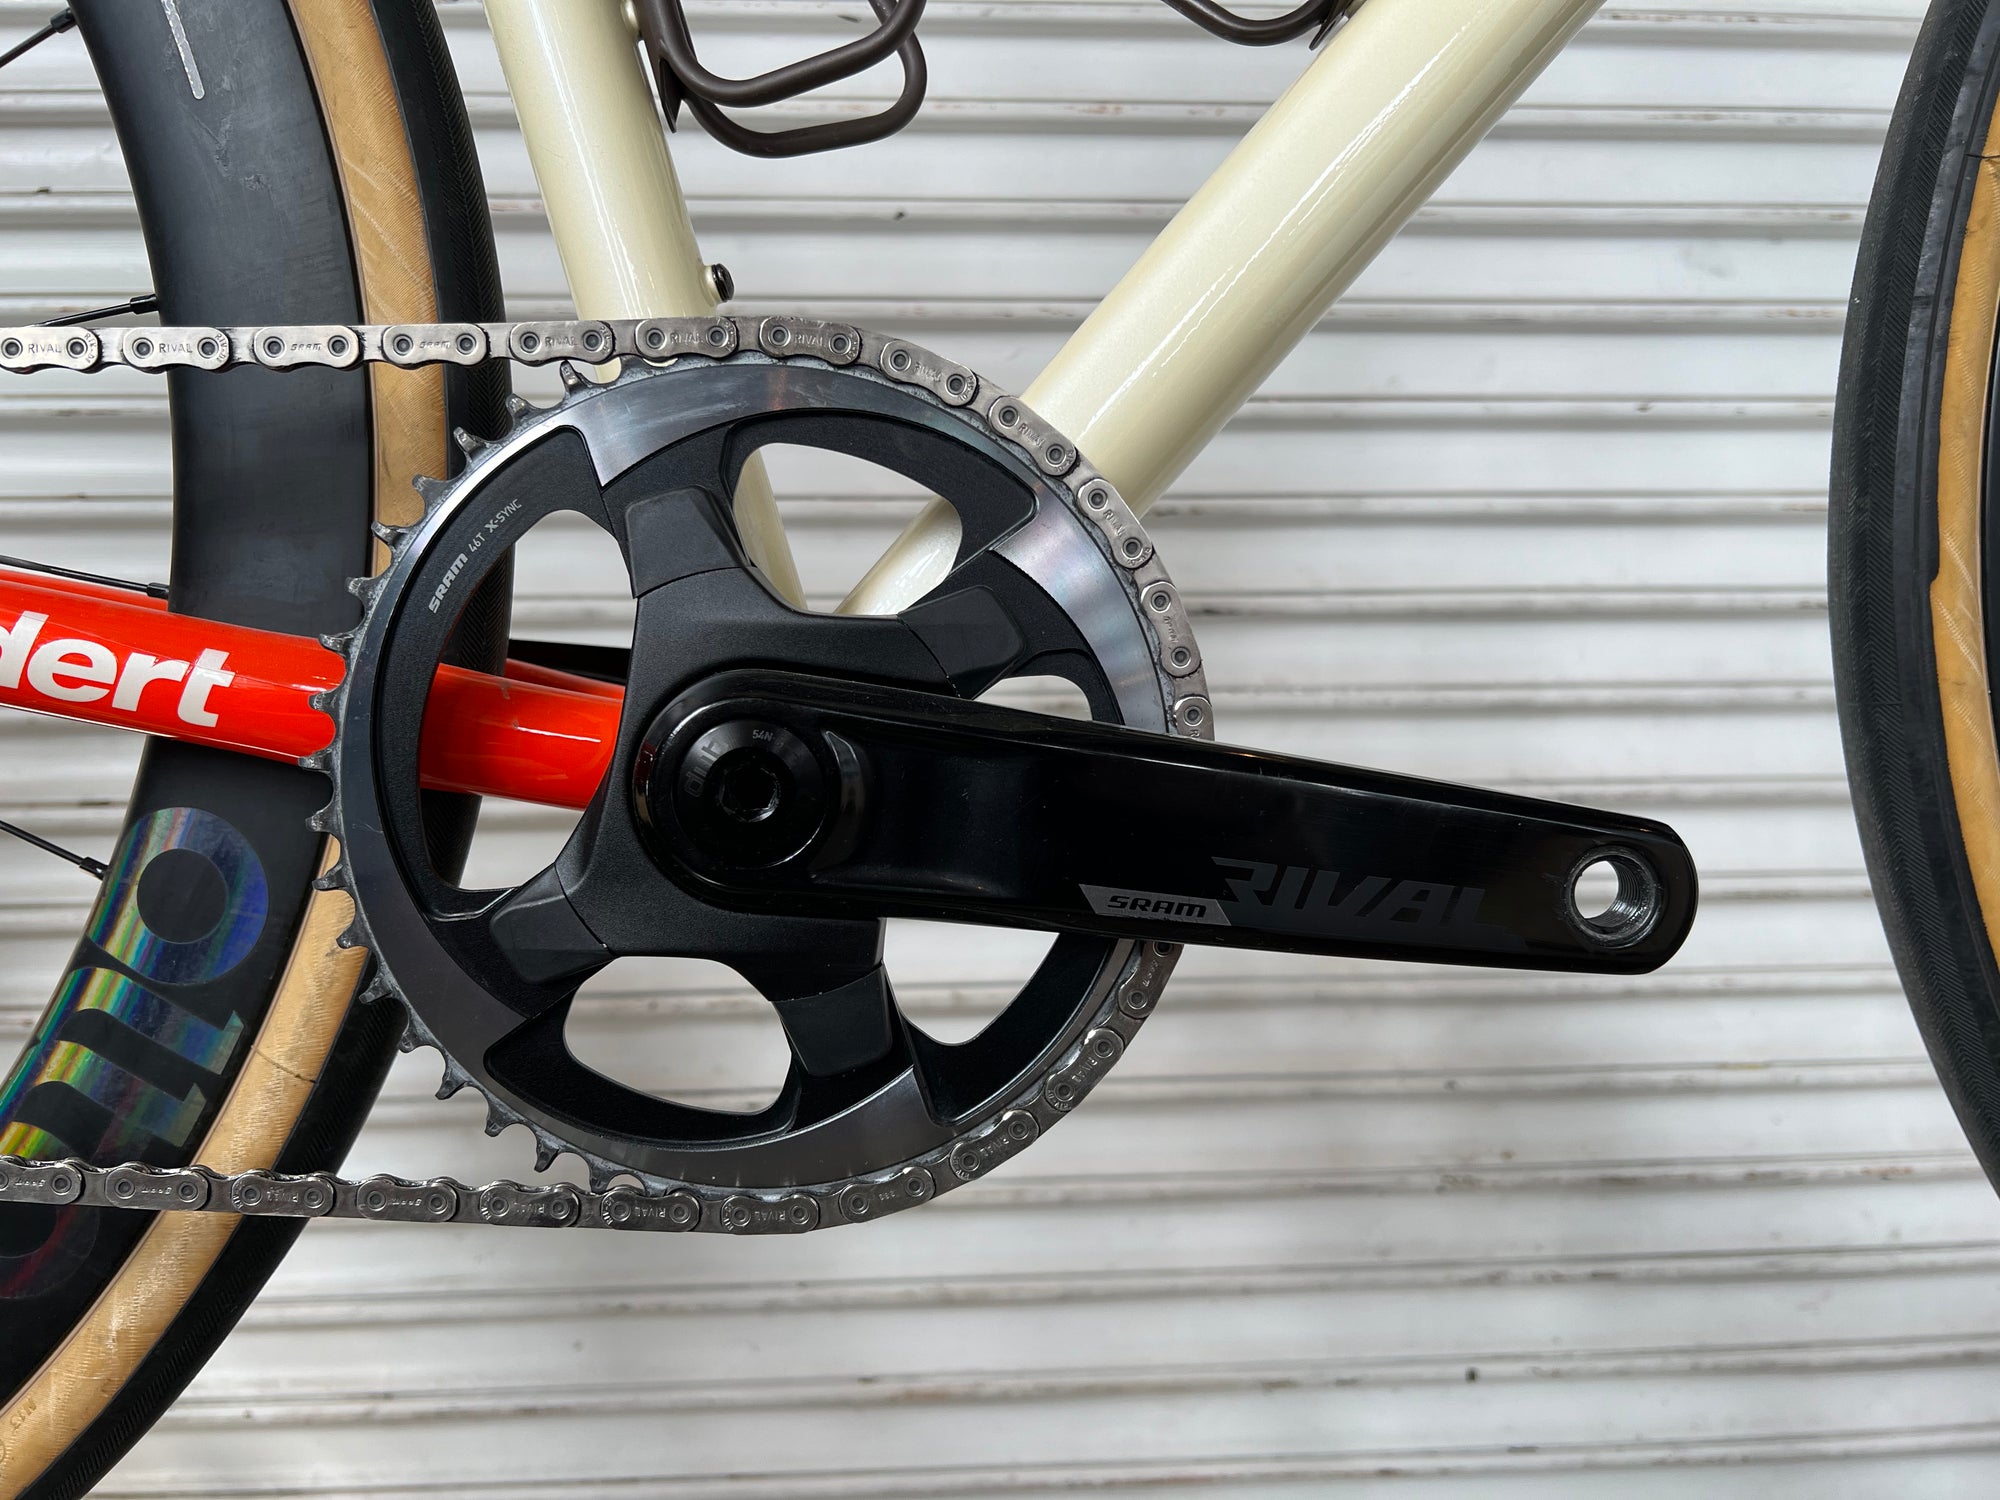 STANDERT Pfadfinder - Complete Bike - 58 cm